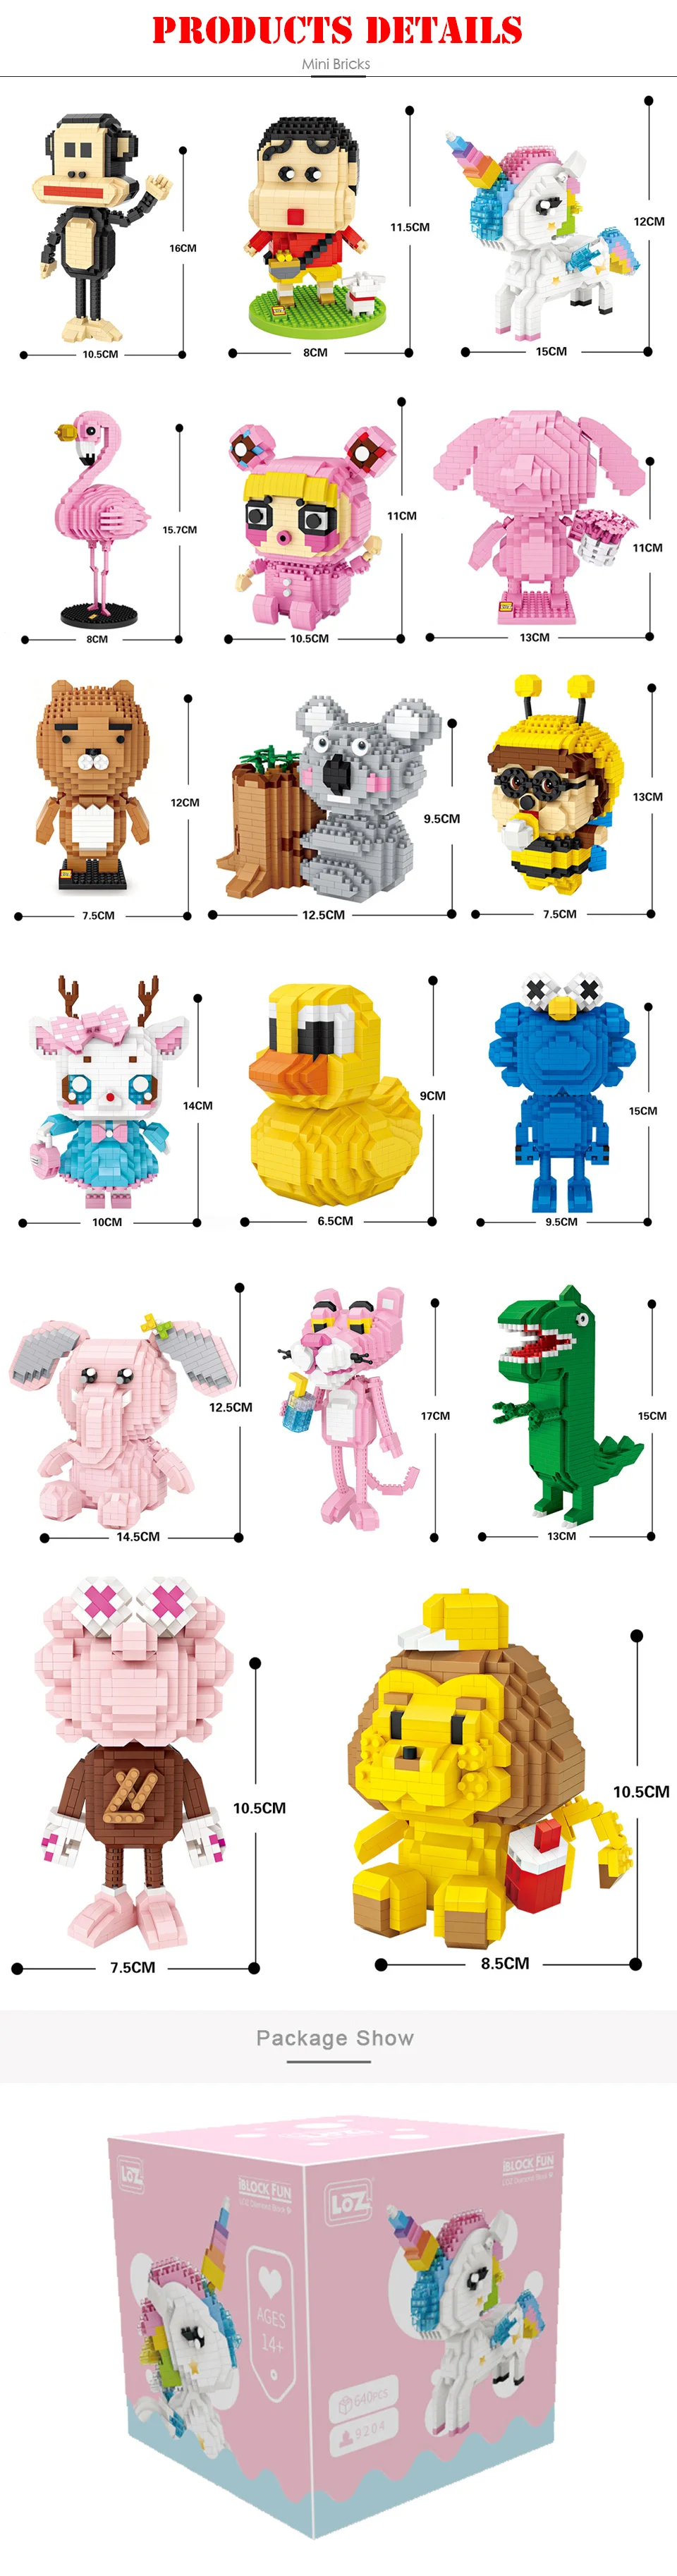 LOZ алмазные блоки Единорог аниме фигурка мультфильм животное Розовая пантера Фламинго развивающие Кирпичи DIY игрушки для детей